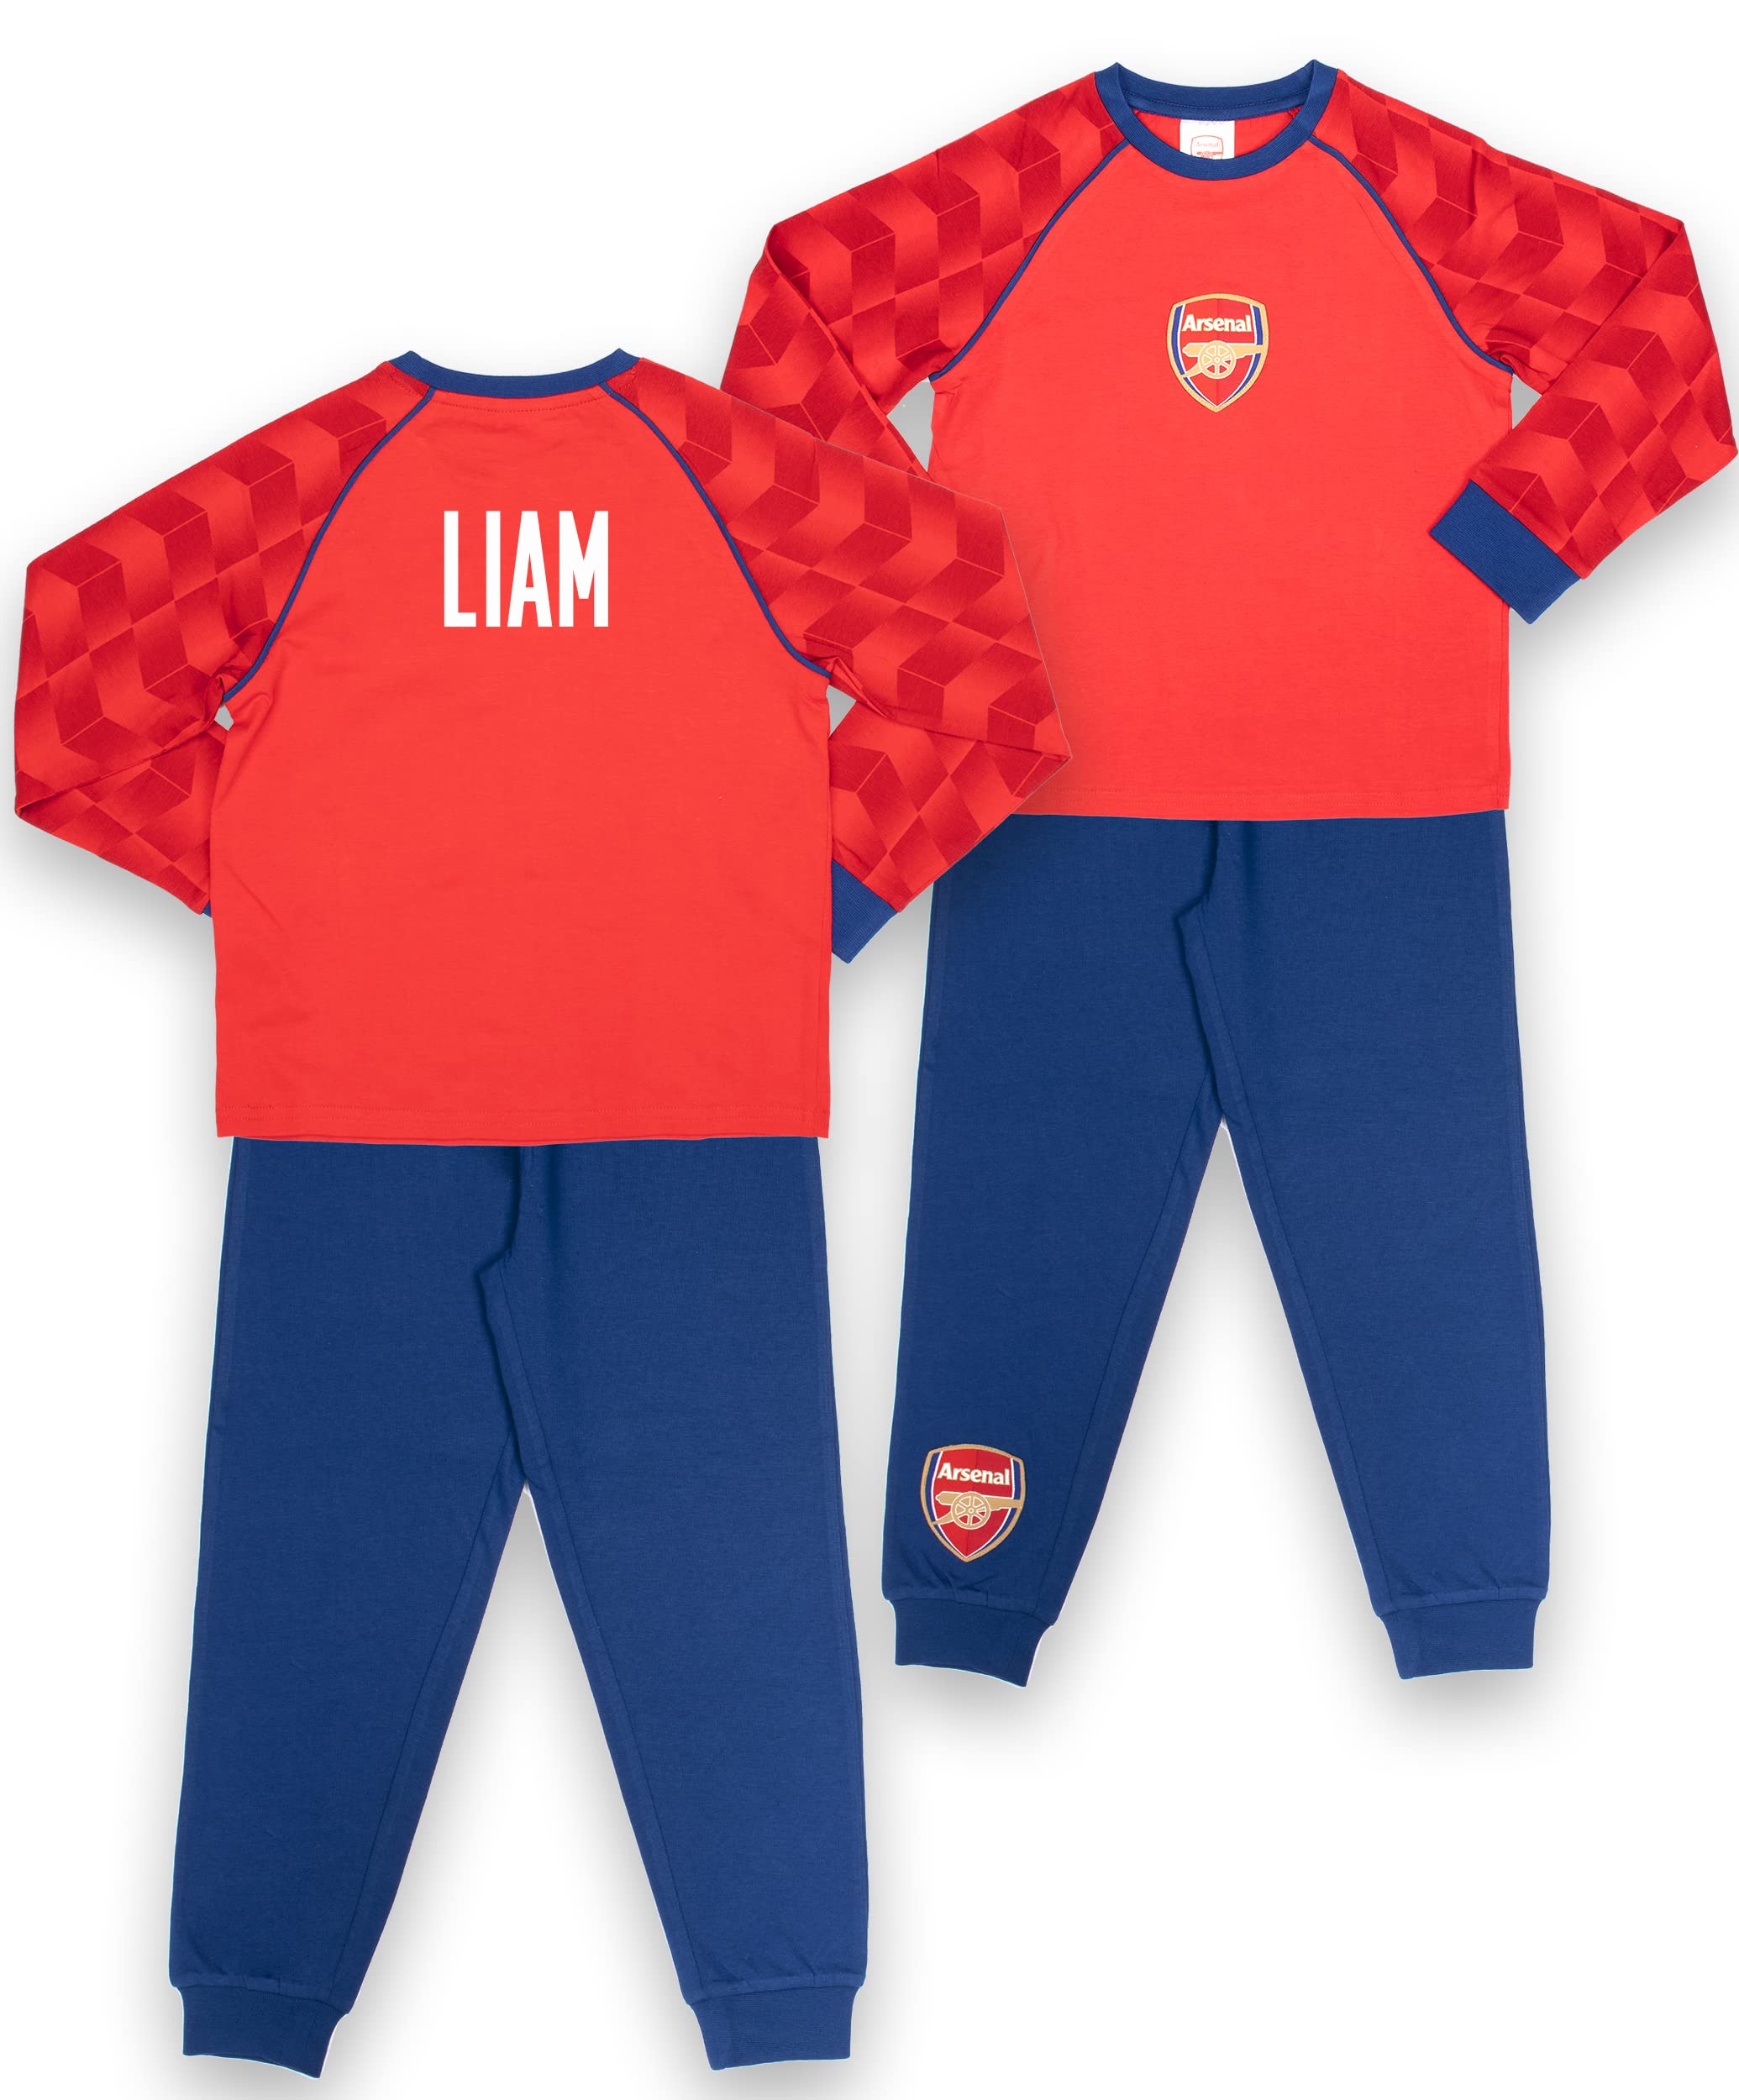 Arsenal FC – personalisierbarer Kinder-Schlafanzug – Pyjama für Jungen – Rot & Marineblau Langarm Schlafanzug mit Arsenal Logo – 100% Baumwolle Nachtwäsche – Offizielles Arsenal FC Merchandise